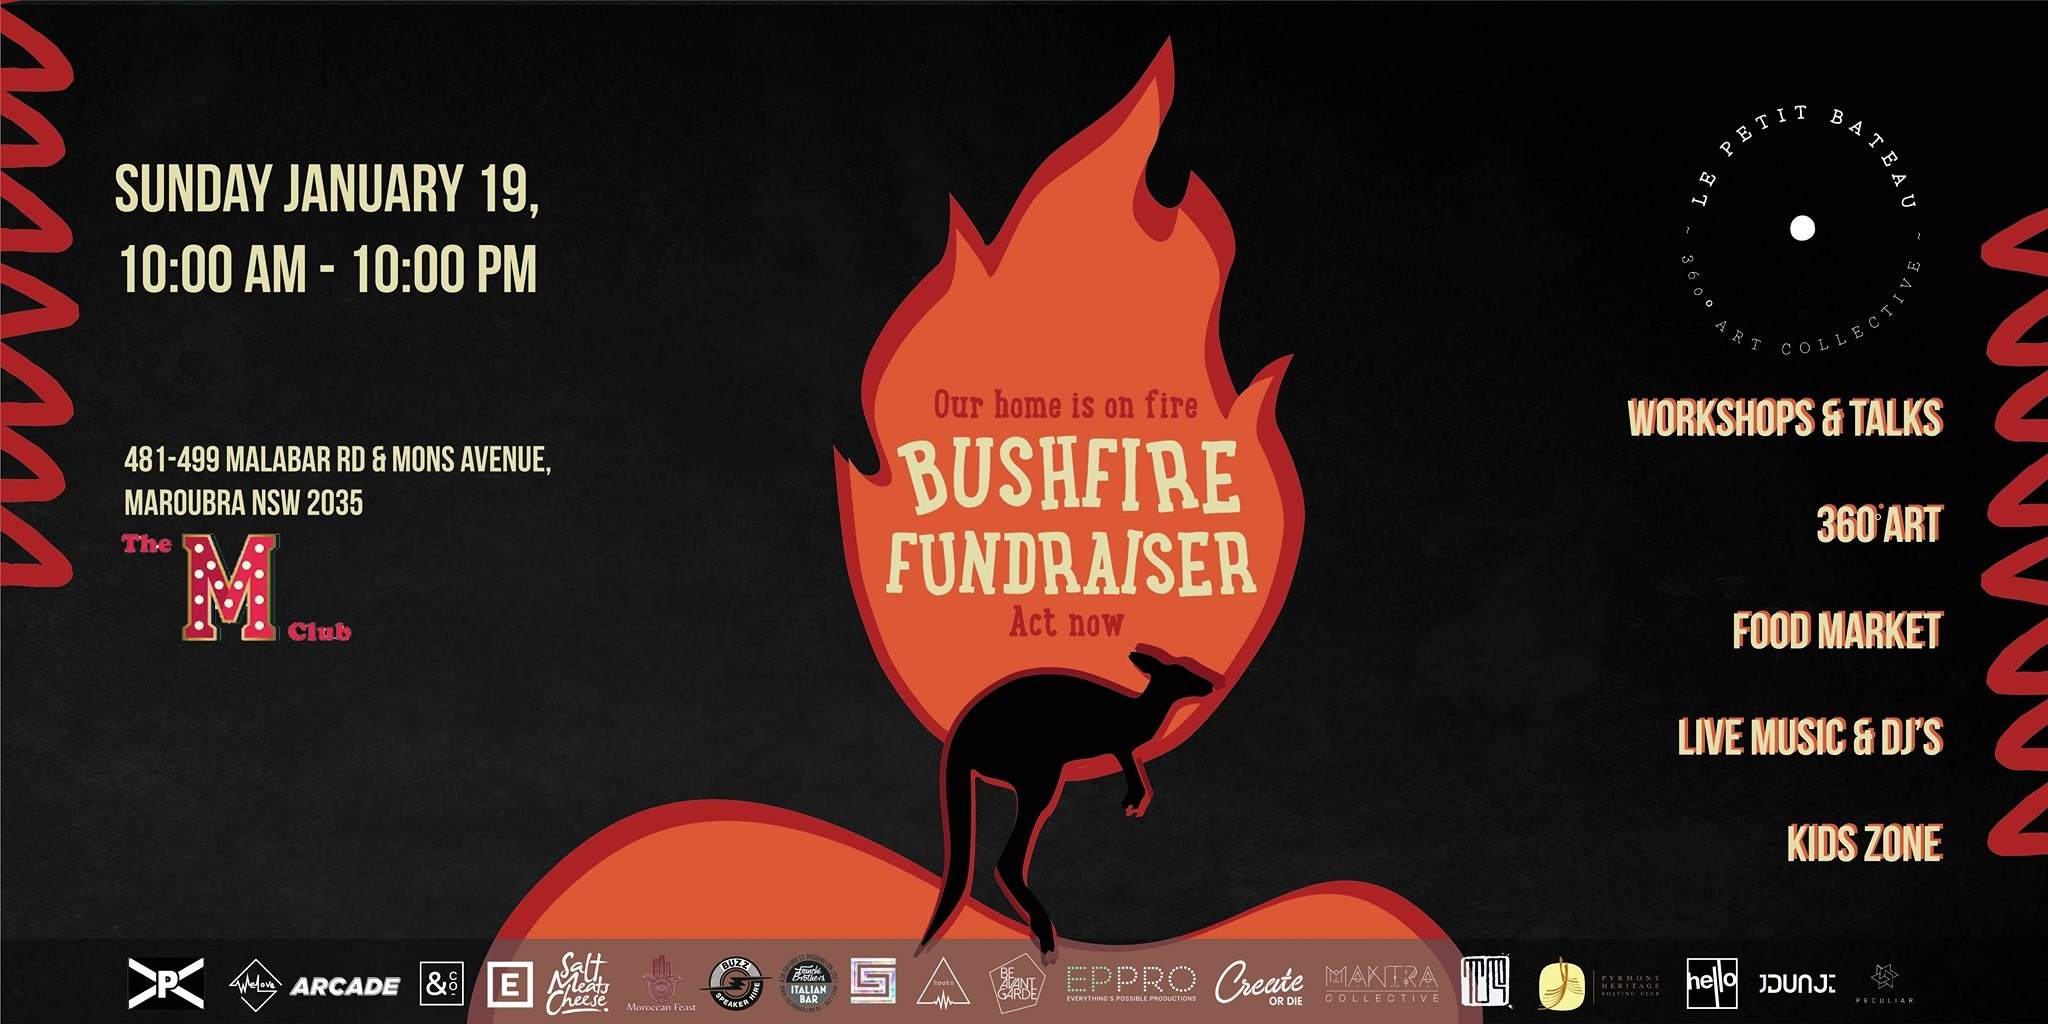 Community Bushfire Fundraiser - Página frontal